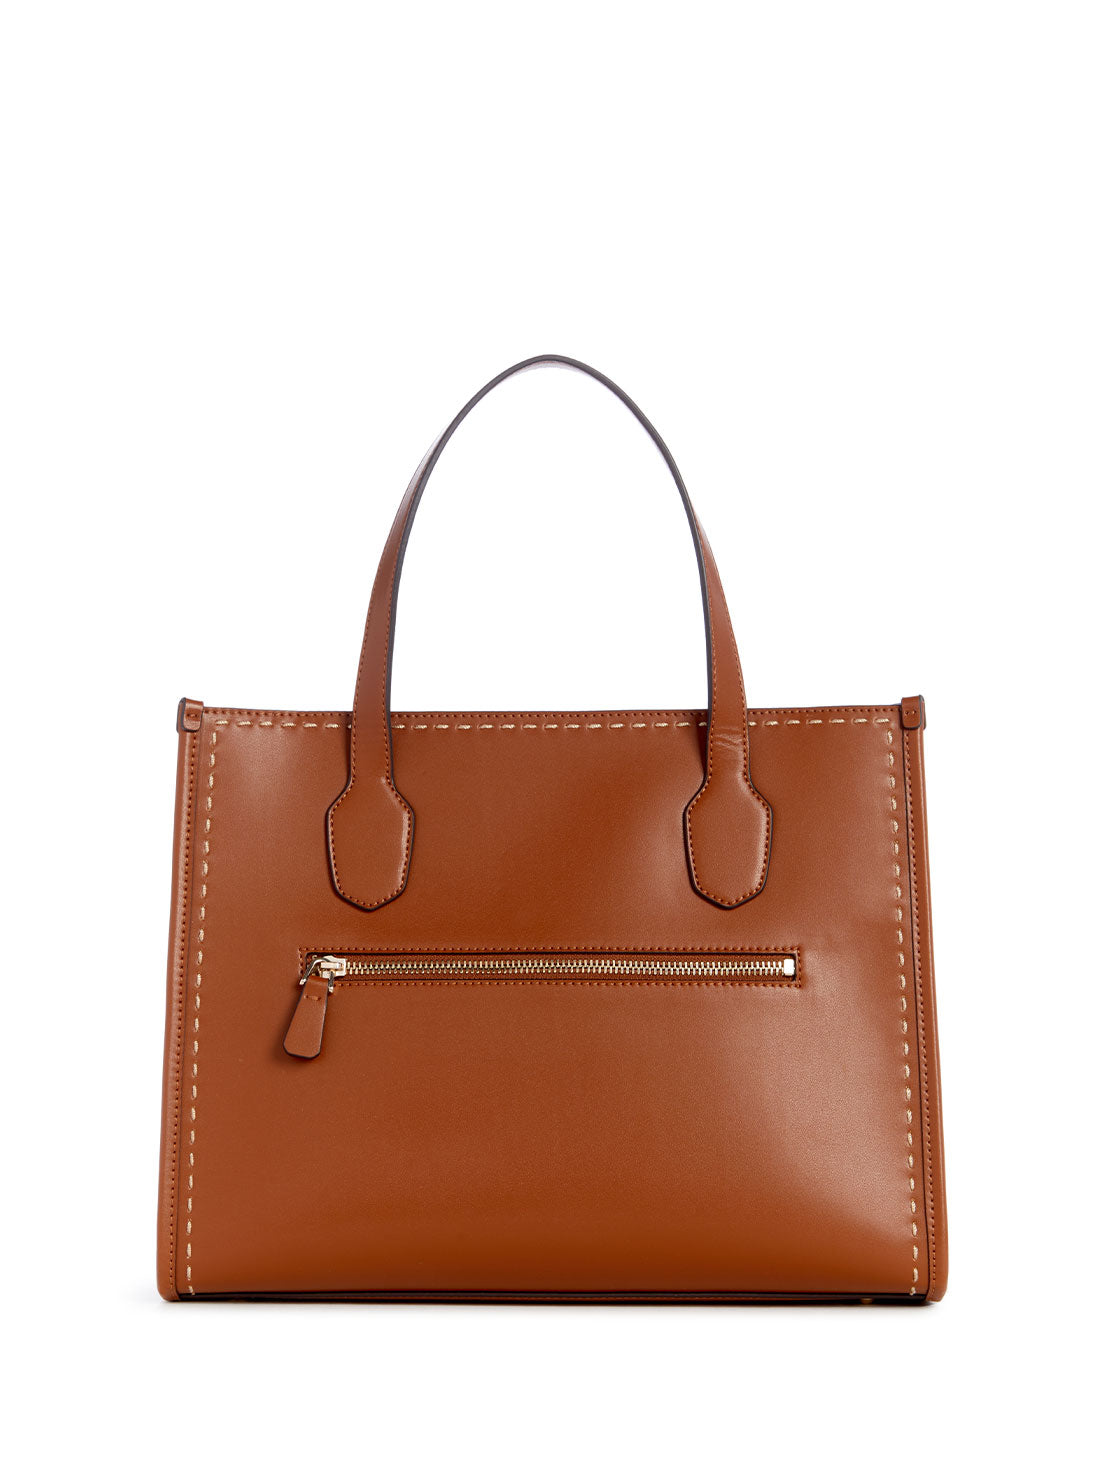 Cognac Brown Silvana Dual Tote Bag | GUESS Women's Handbags | back view